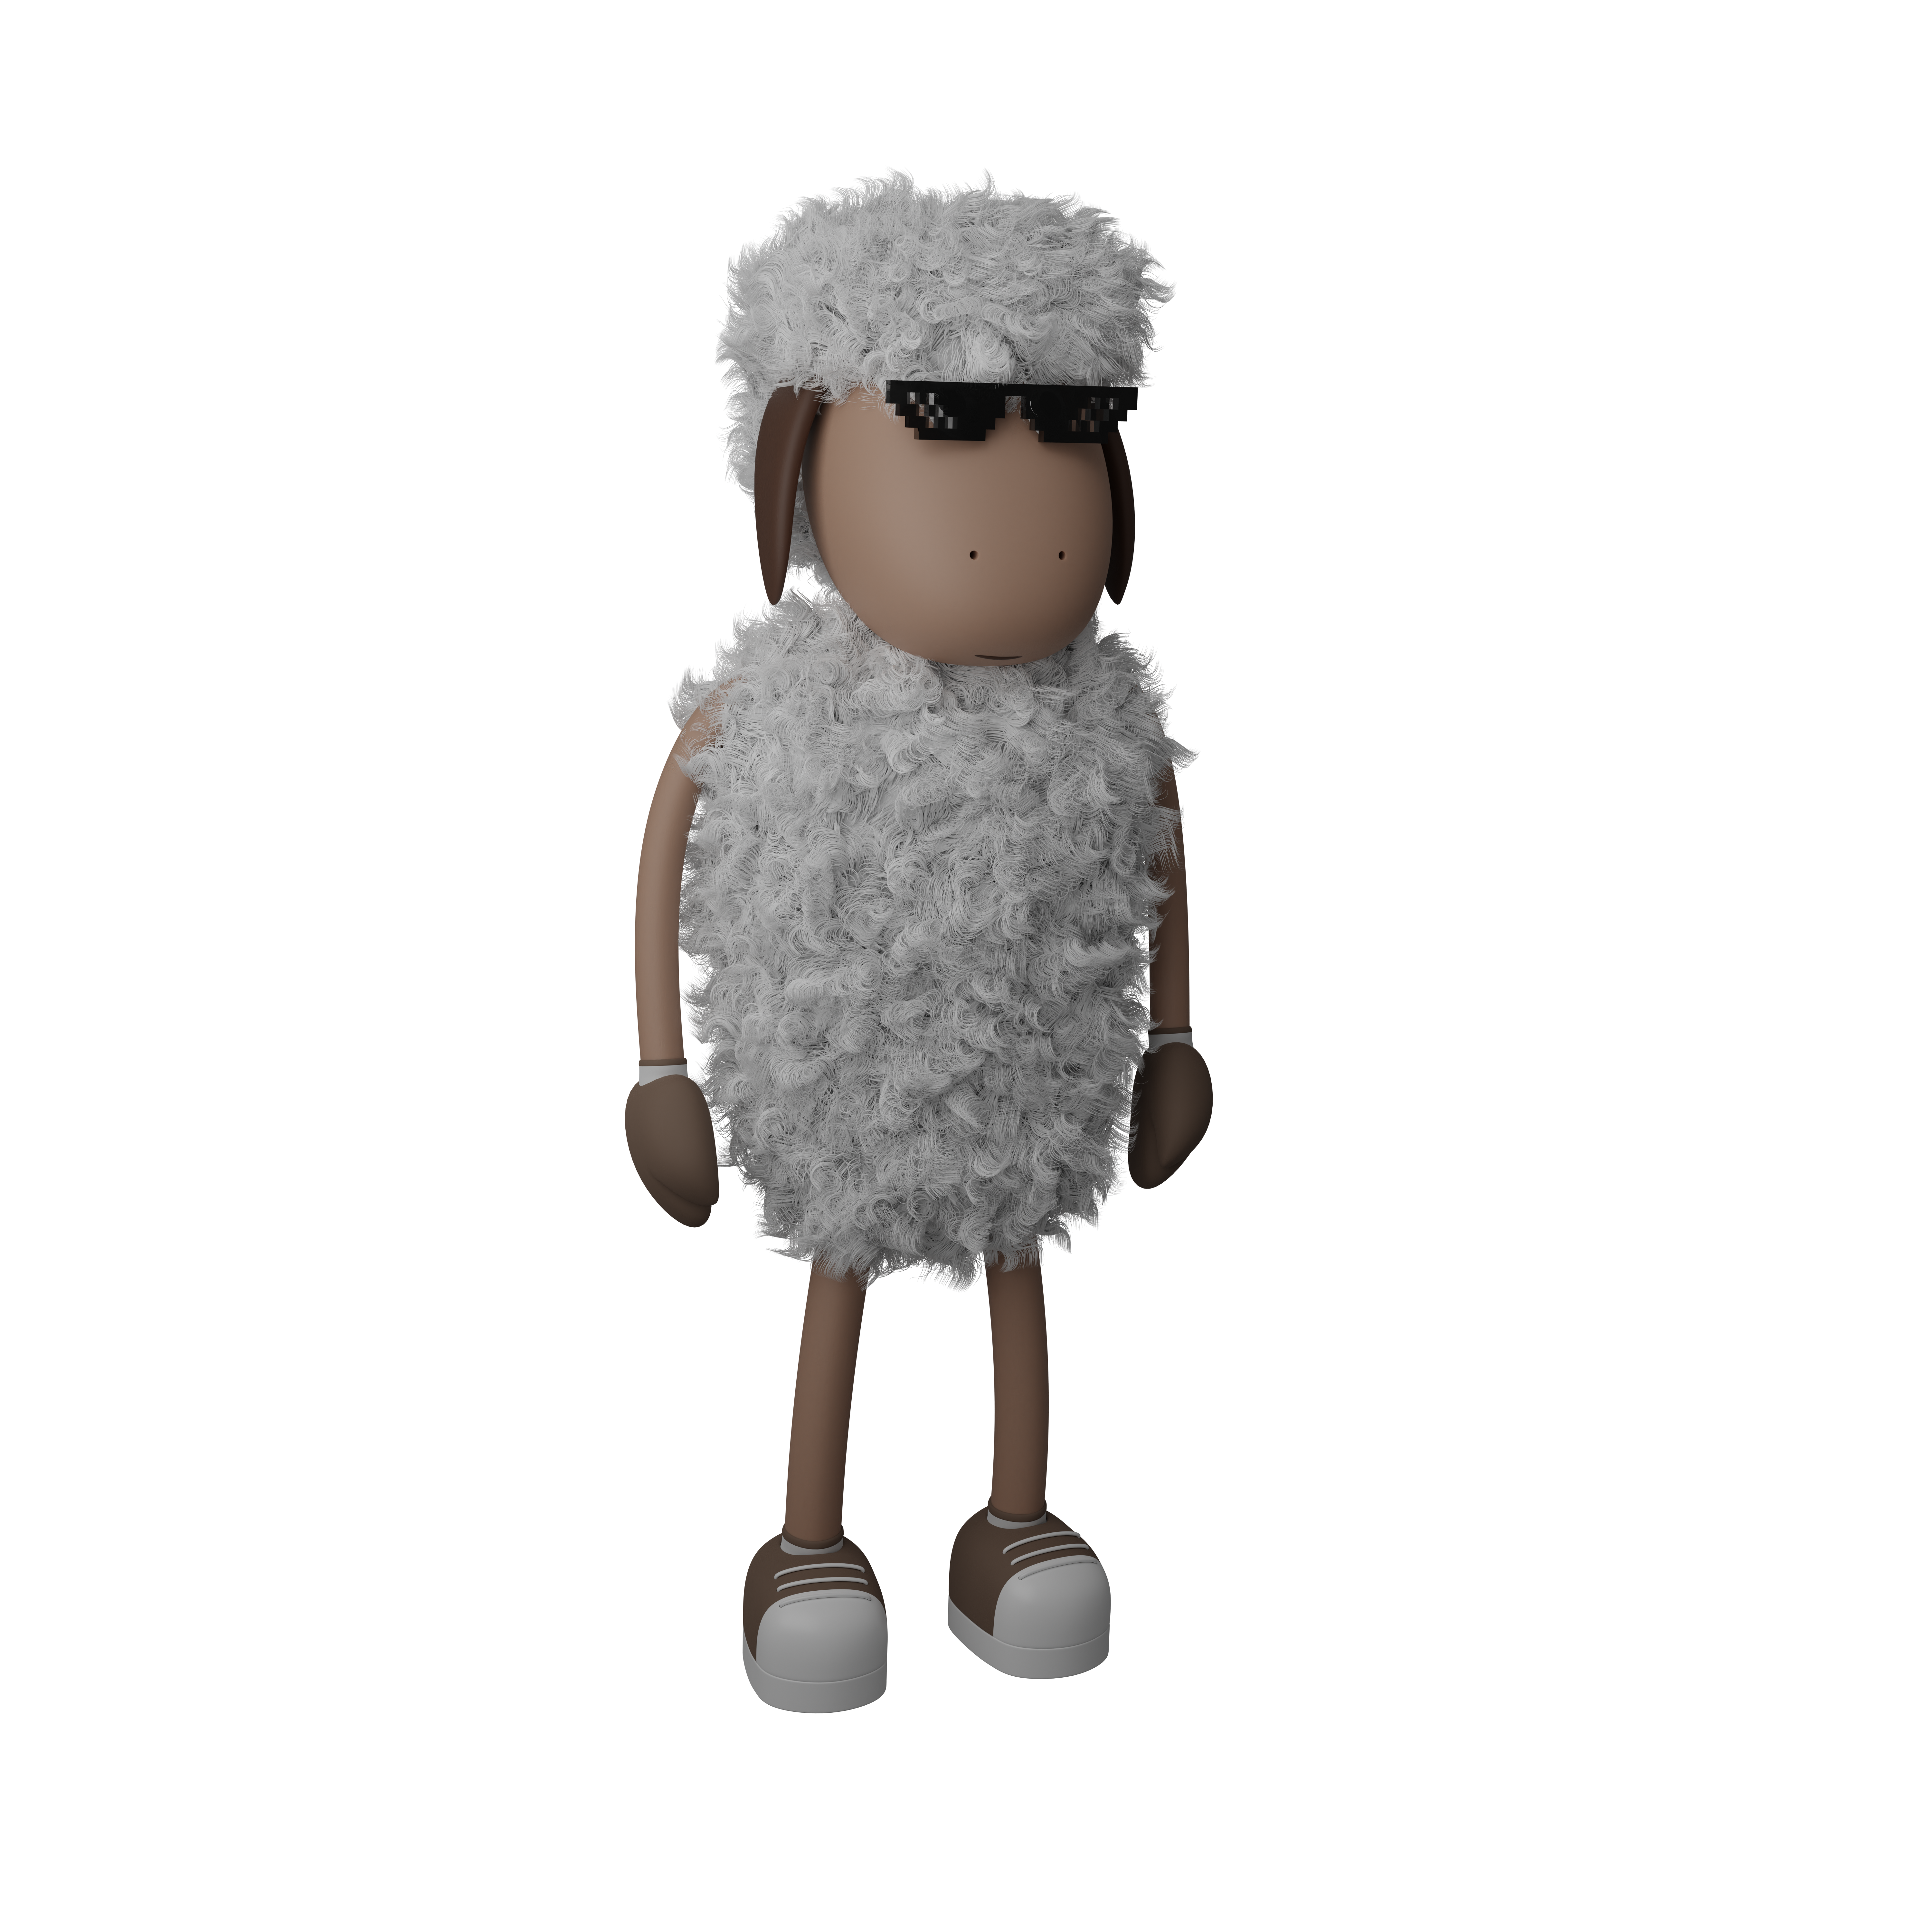 first sheep nft